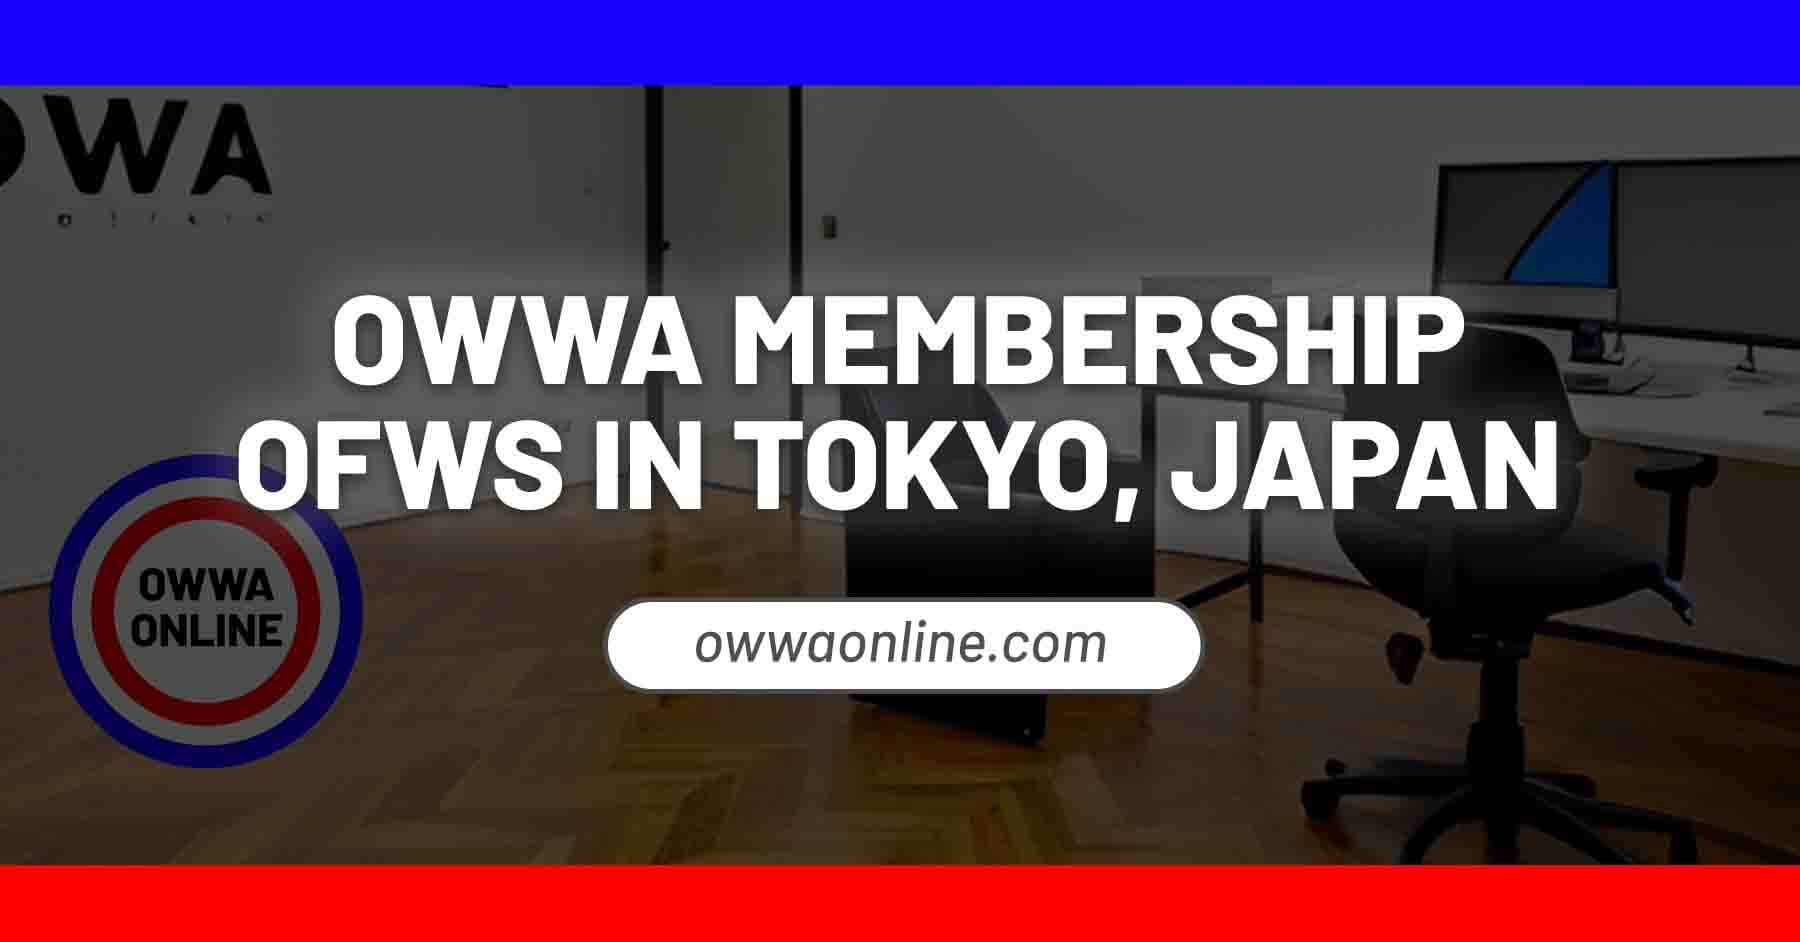 application for owwa membership renewal in tokyo japan